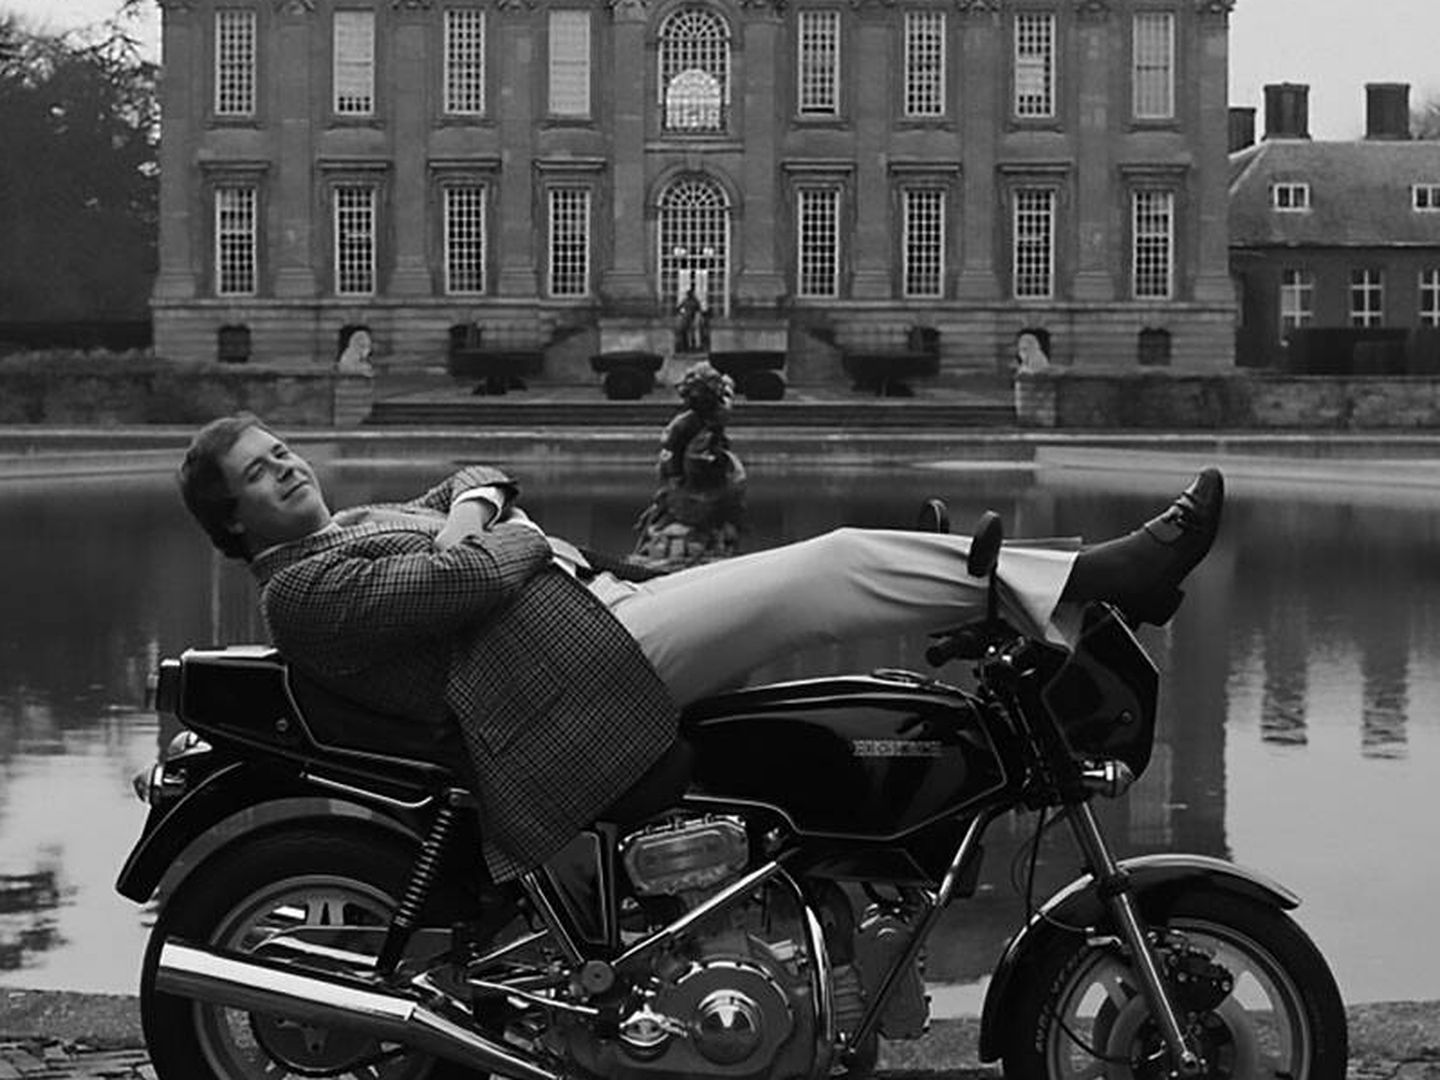 Con su aventura como fabricante de motocicletas, Lord Hesketh también perdió otra fortuna. Al final tuvo que vender su palacio de Easton Neston (al fondo). (Hesketh racing)